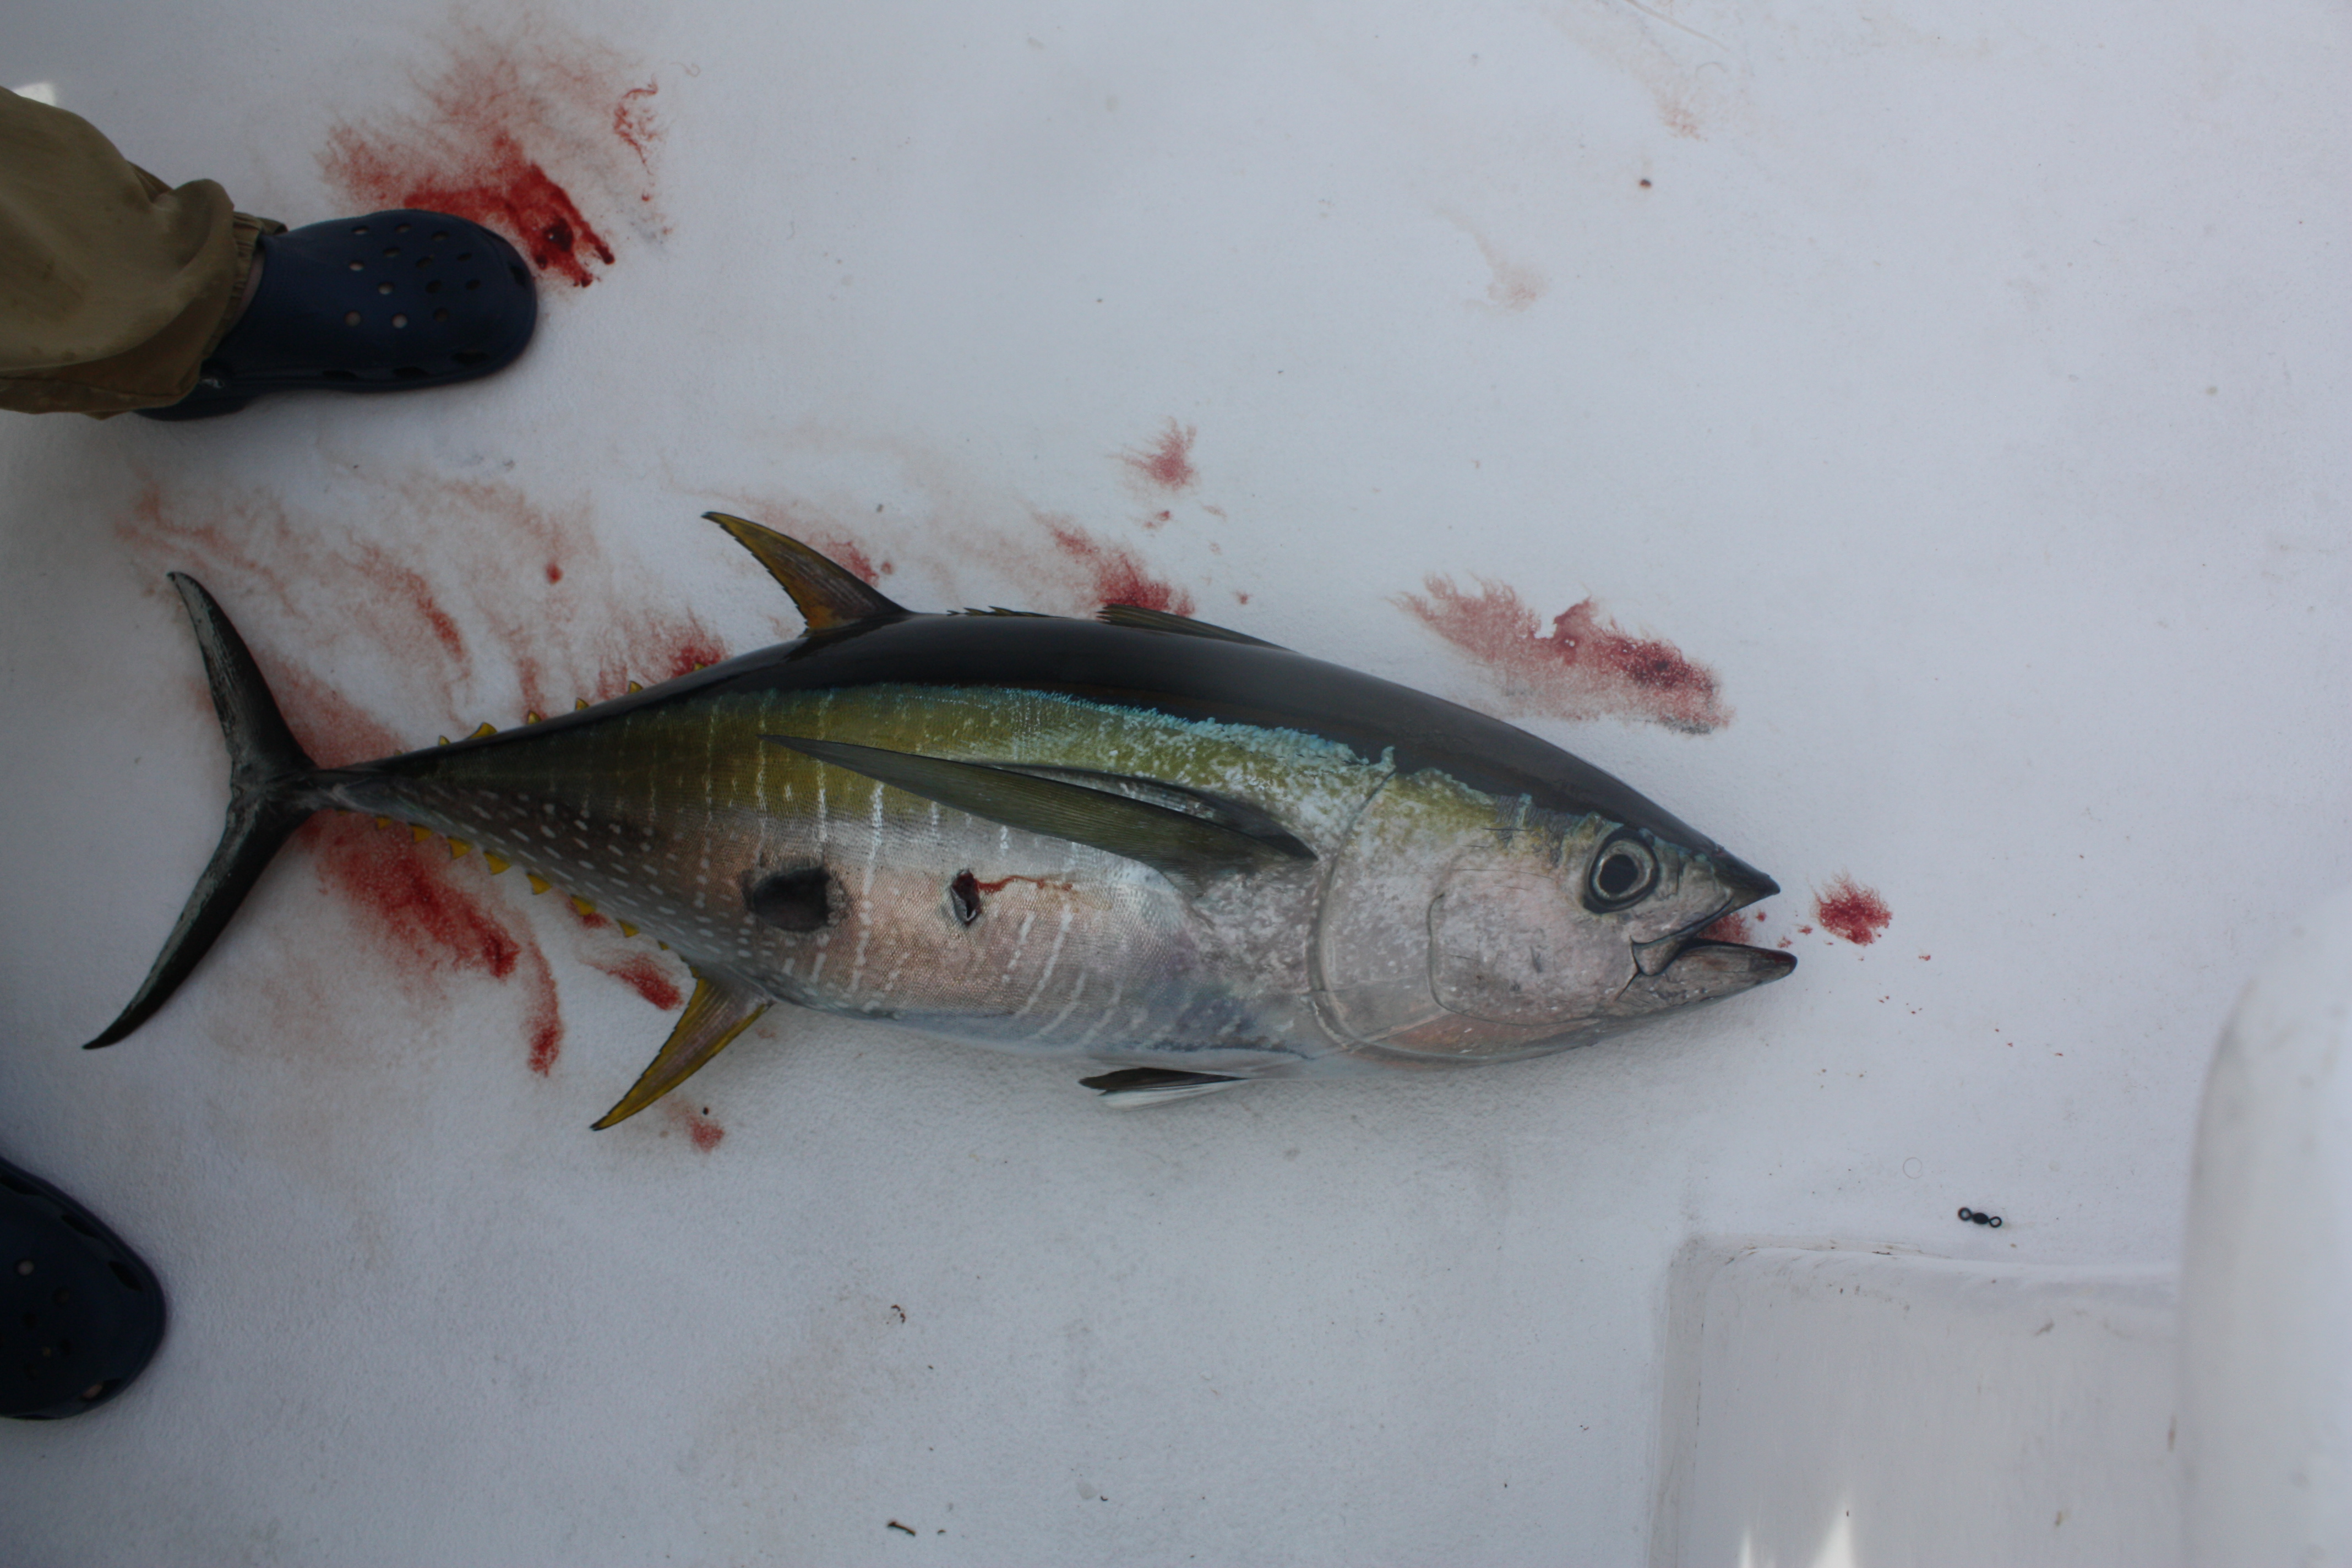 This fall yellowfin tuna fishing is kind of a run and gun fishery.